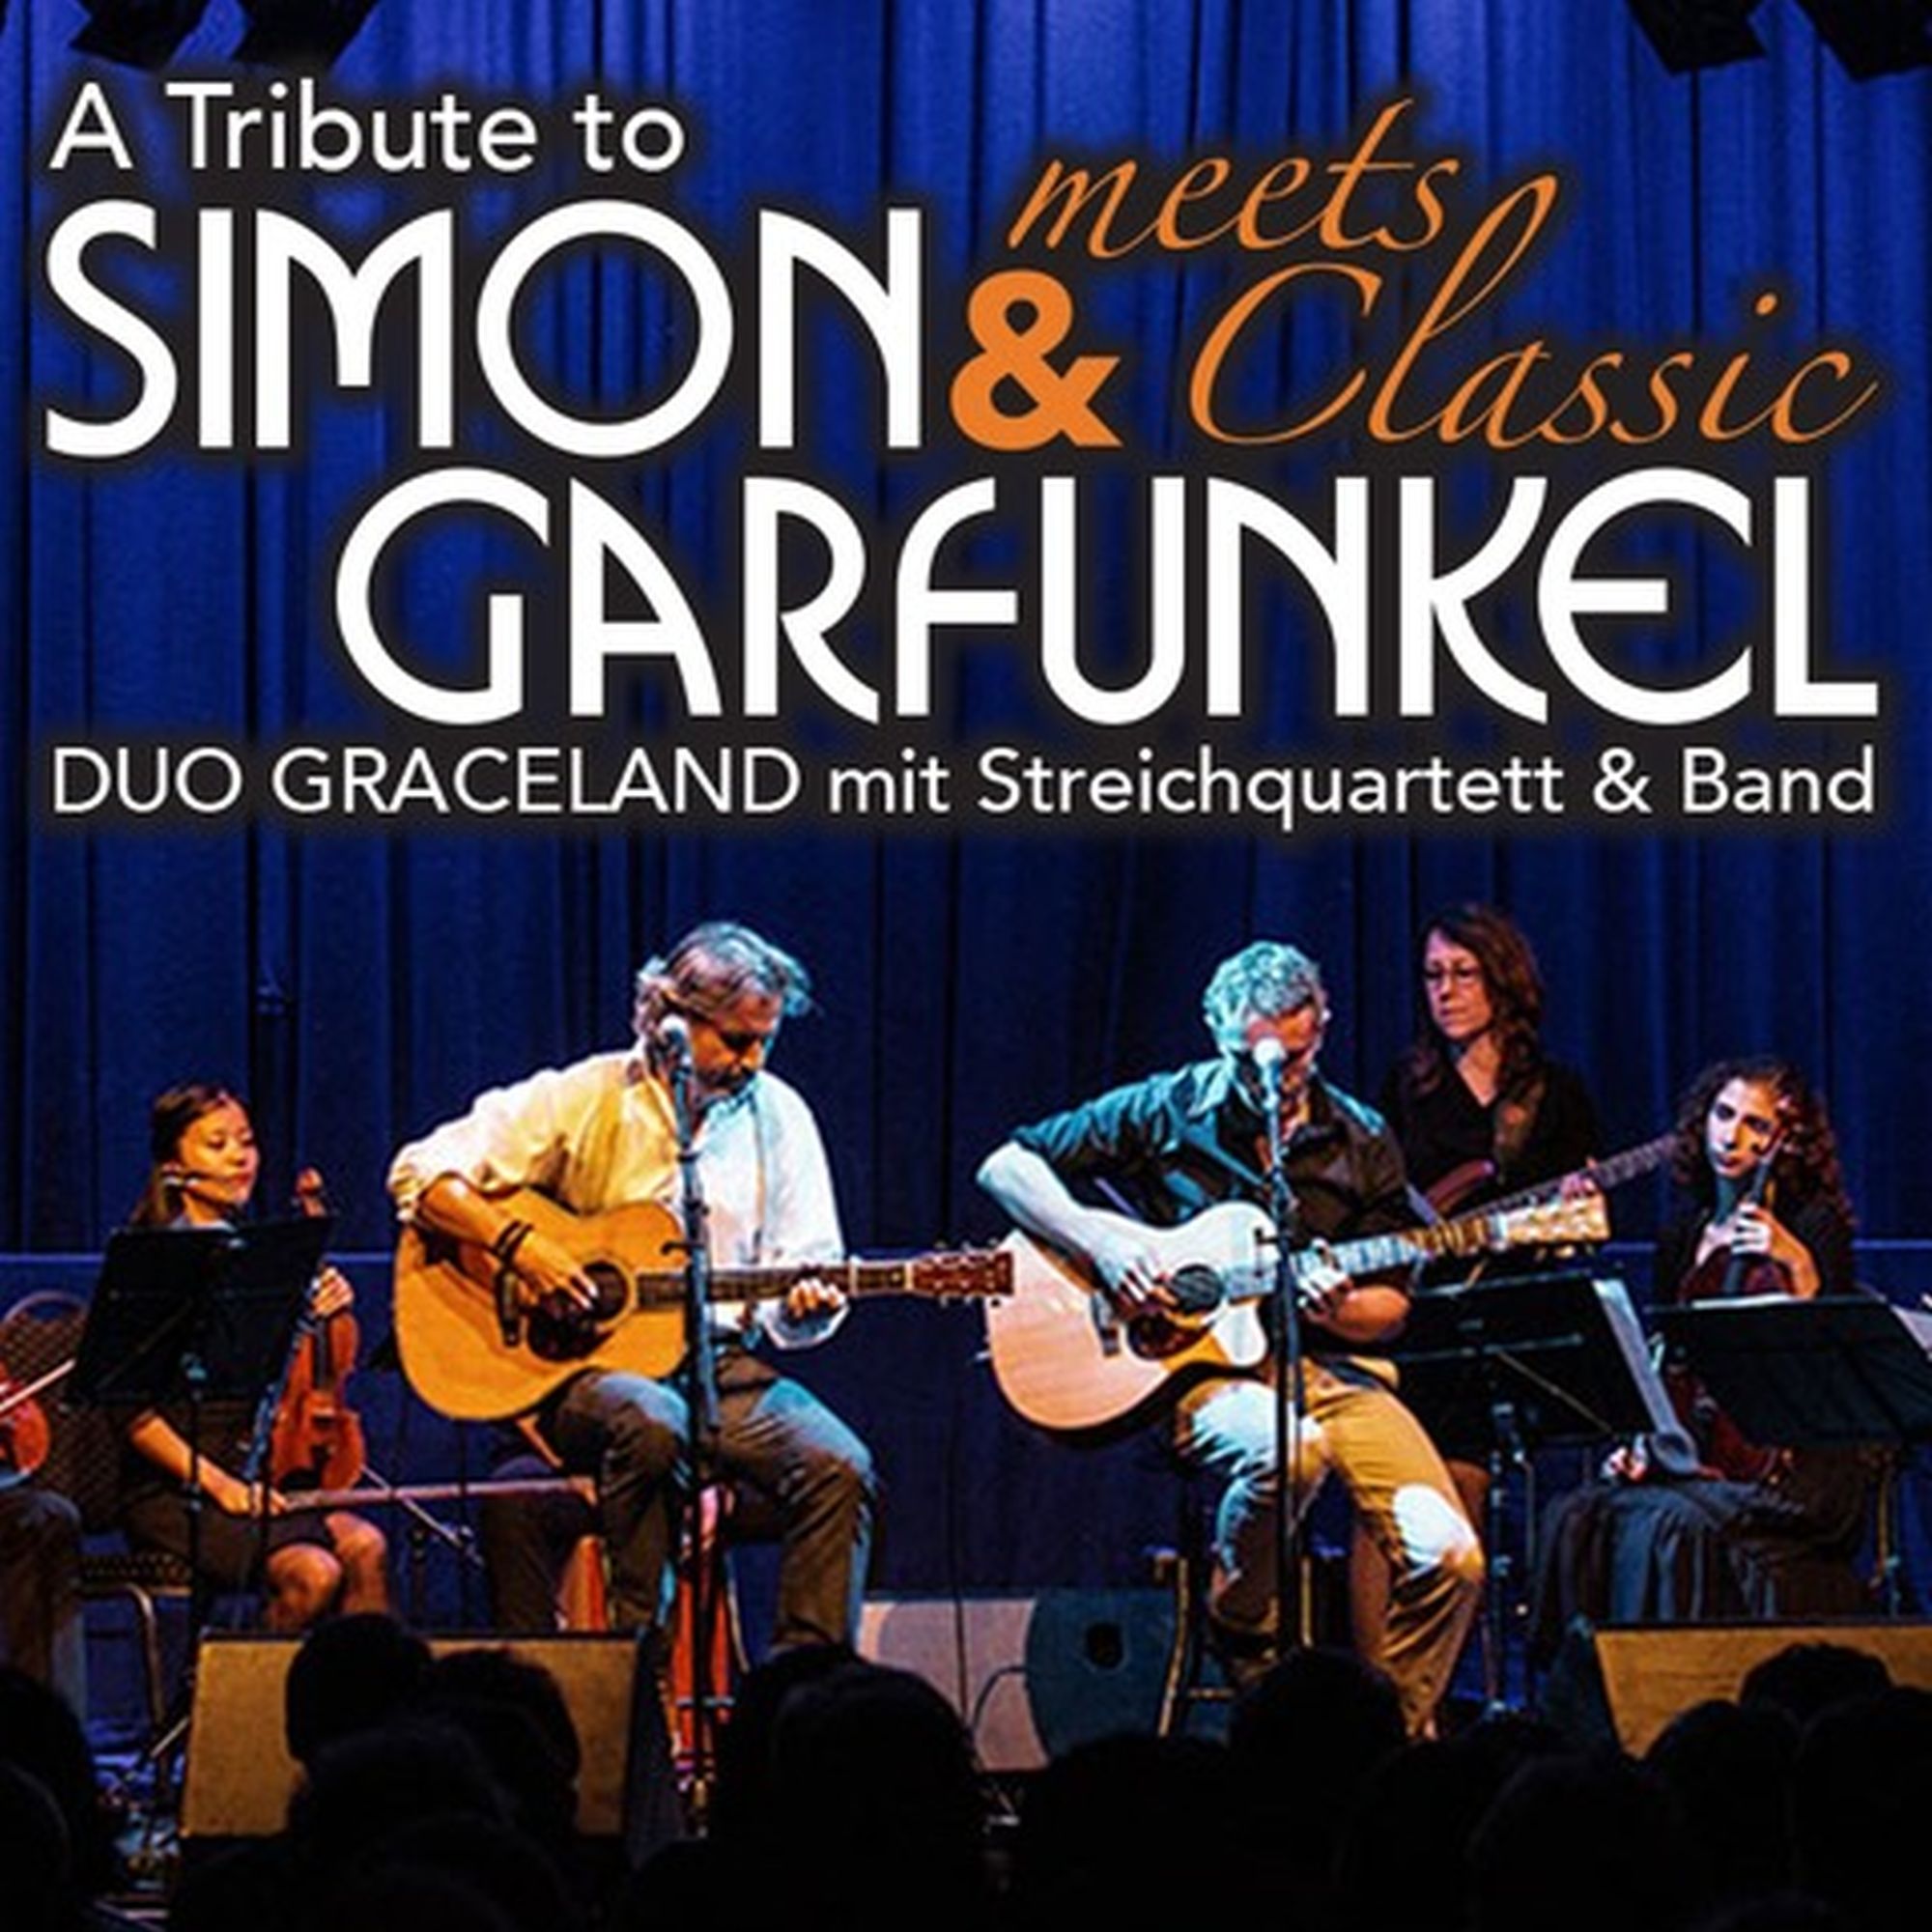 Simon&Garfunkel Tribute meets Classic - Graceland Duo mit Streicherquartett und Band